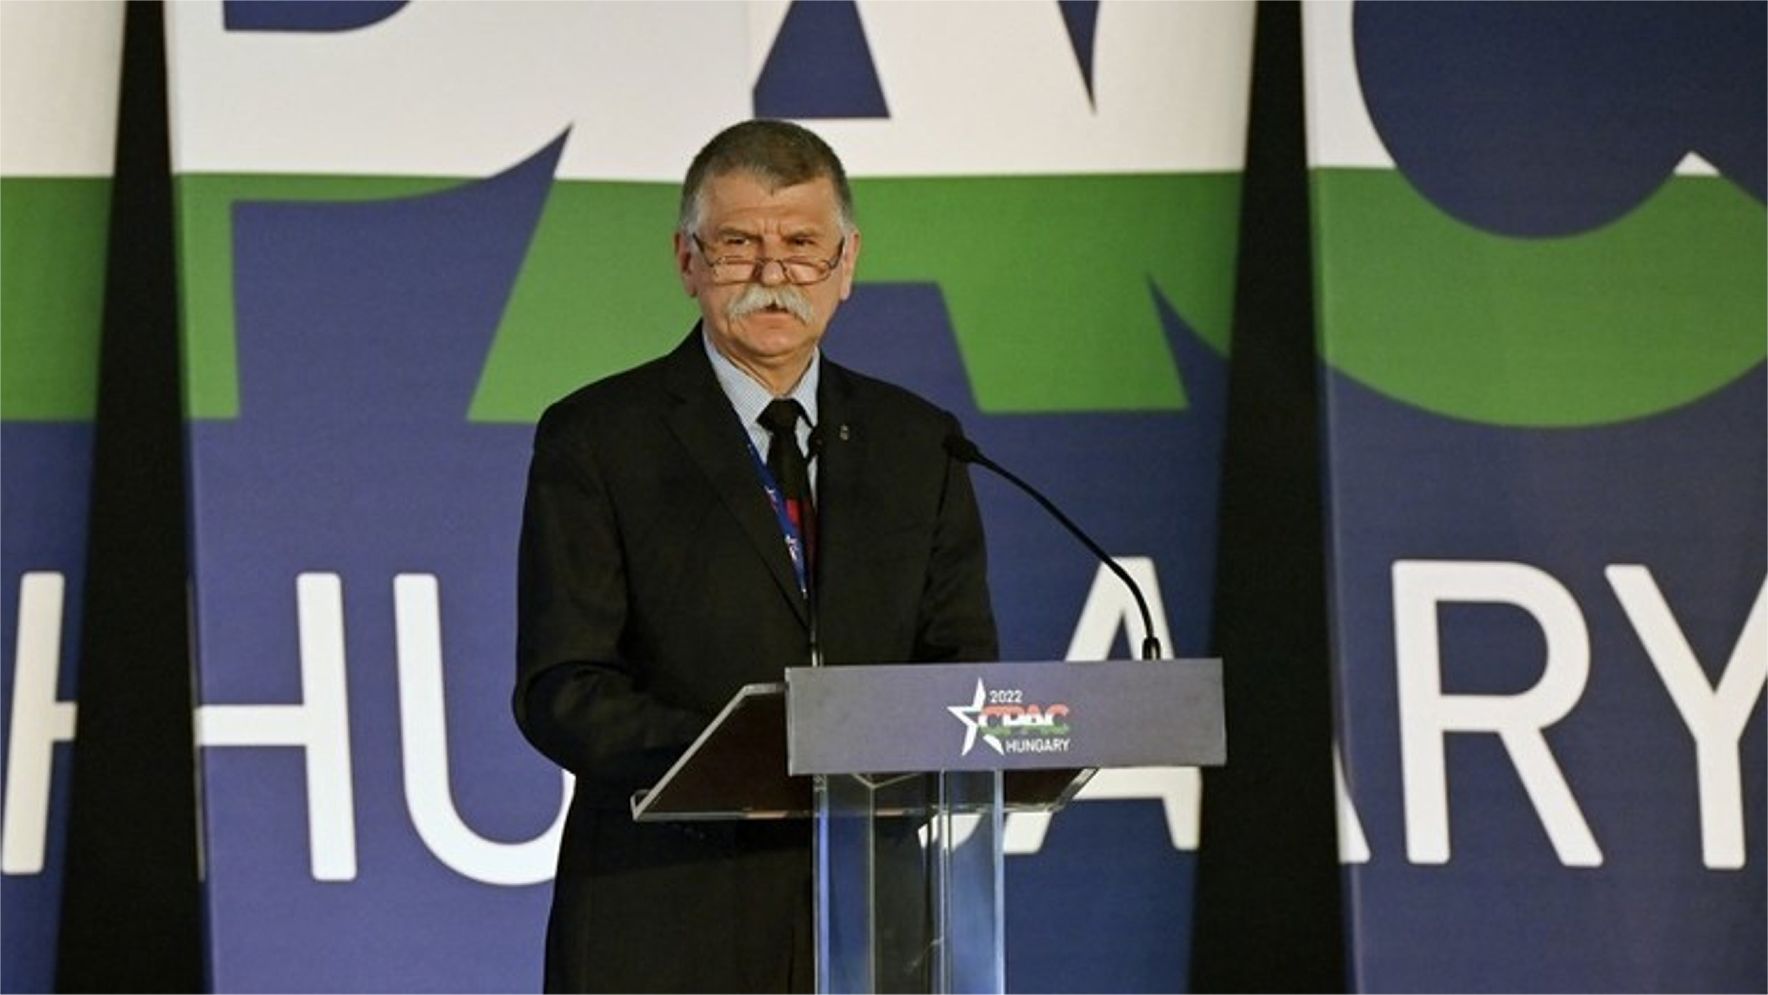 Sankcie sú „od základu nesprávne“, tvrdí predseda maďarského parlamentu